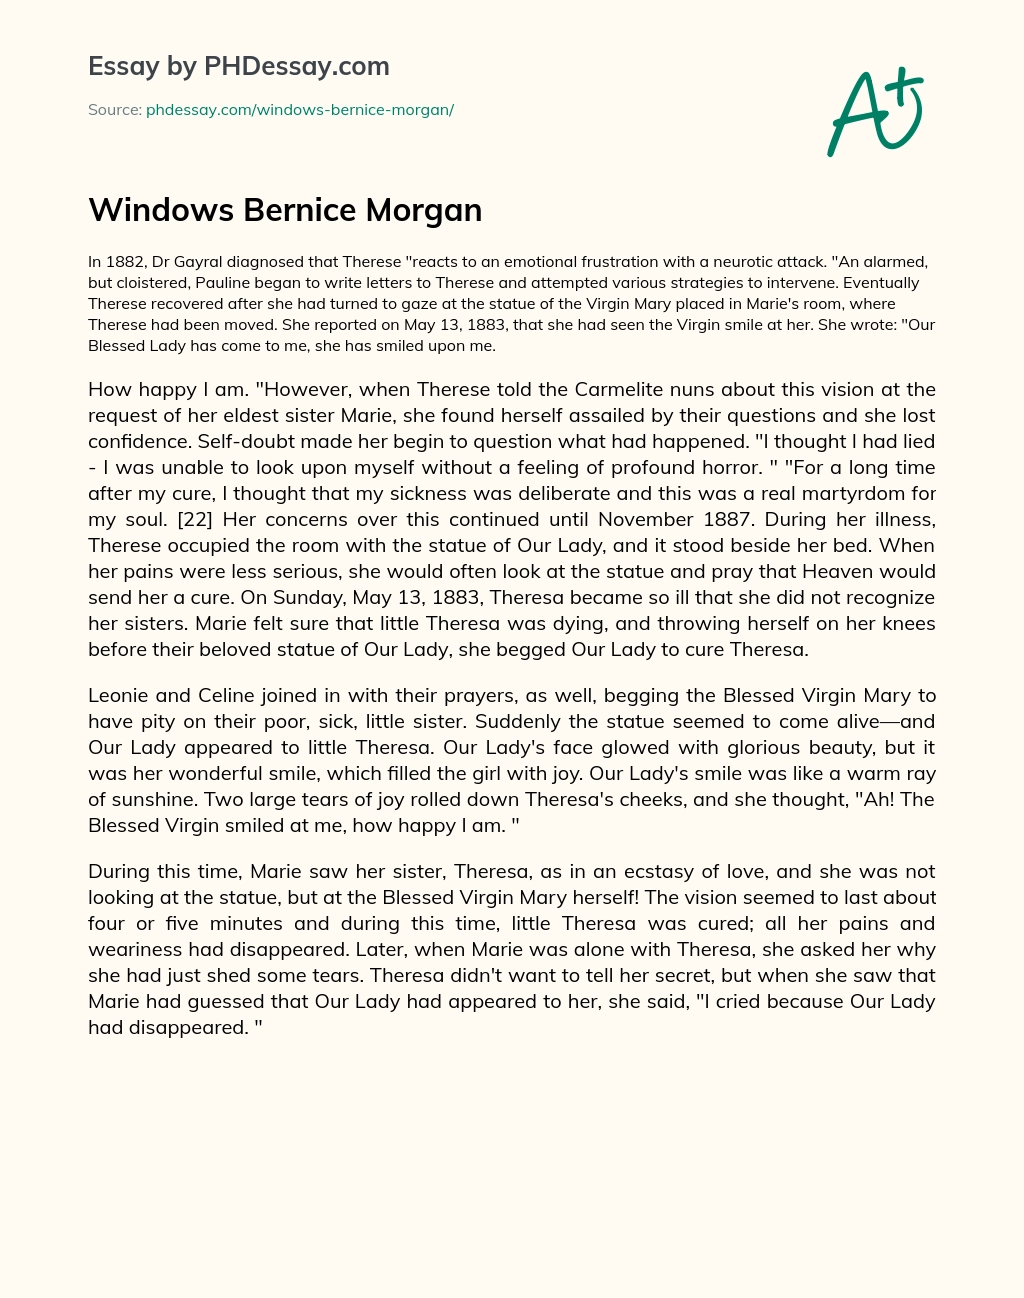 Windows Bernice Morgan essay